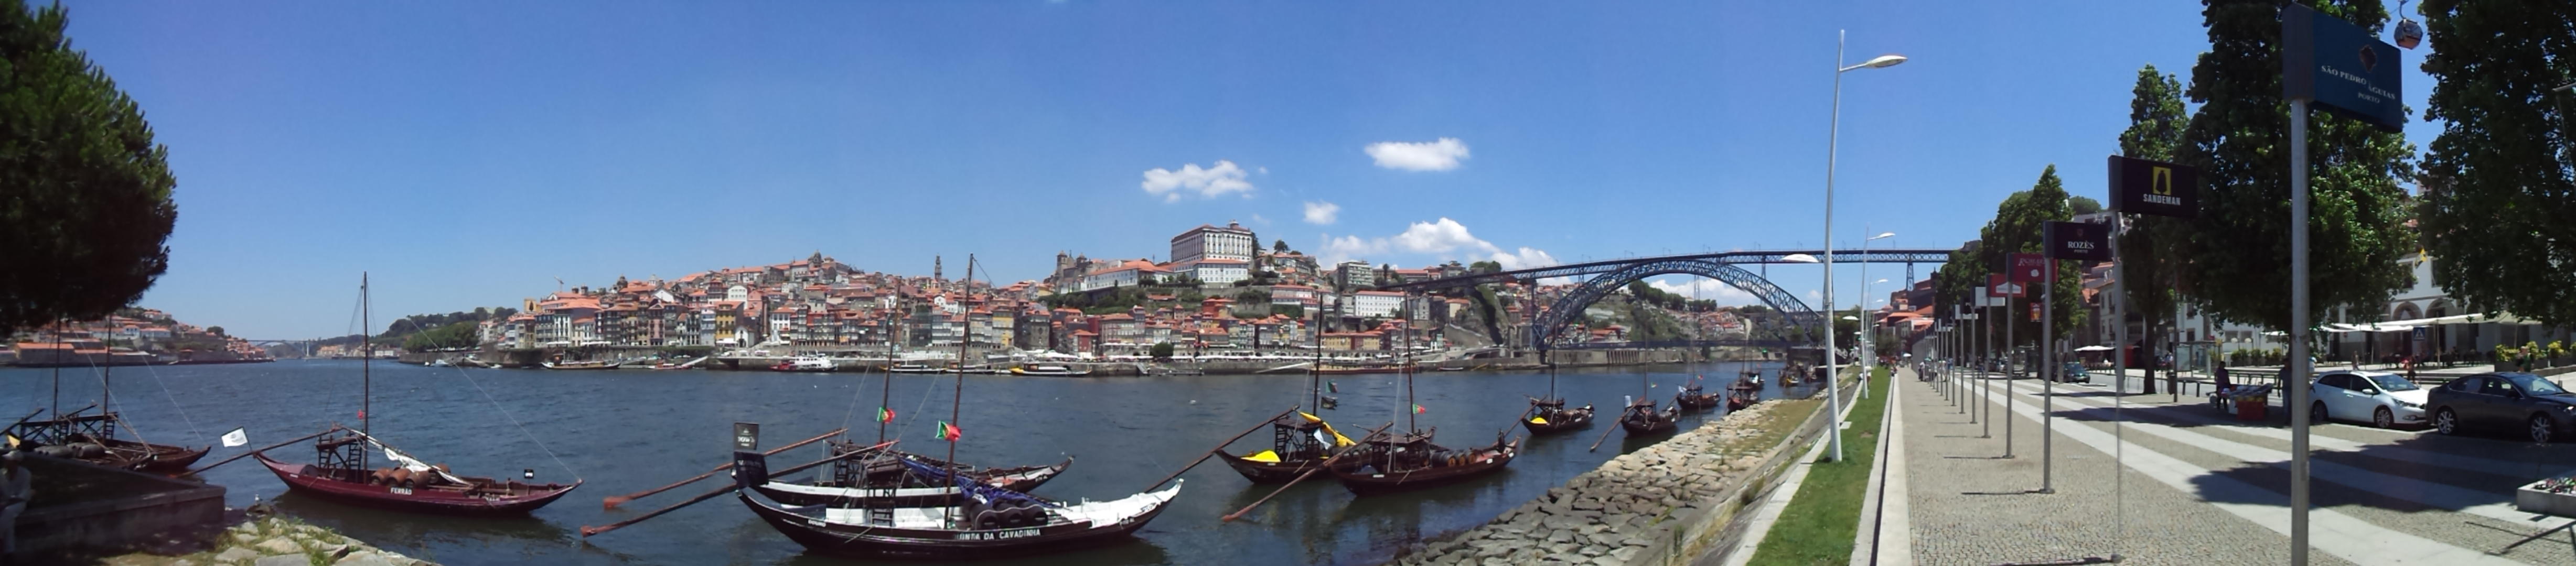 The Douro river and bridge in Porto